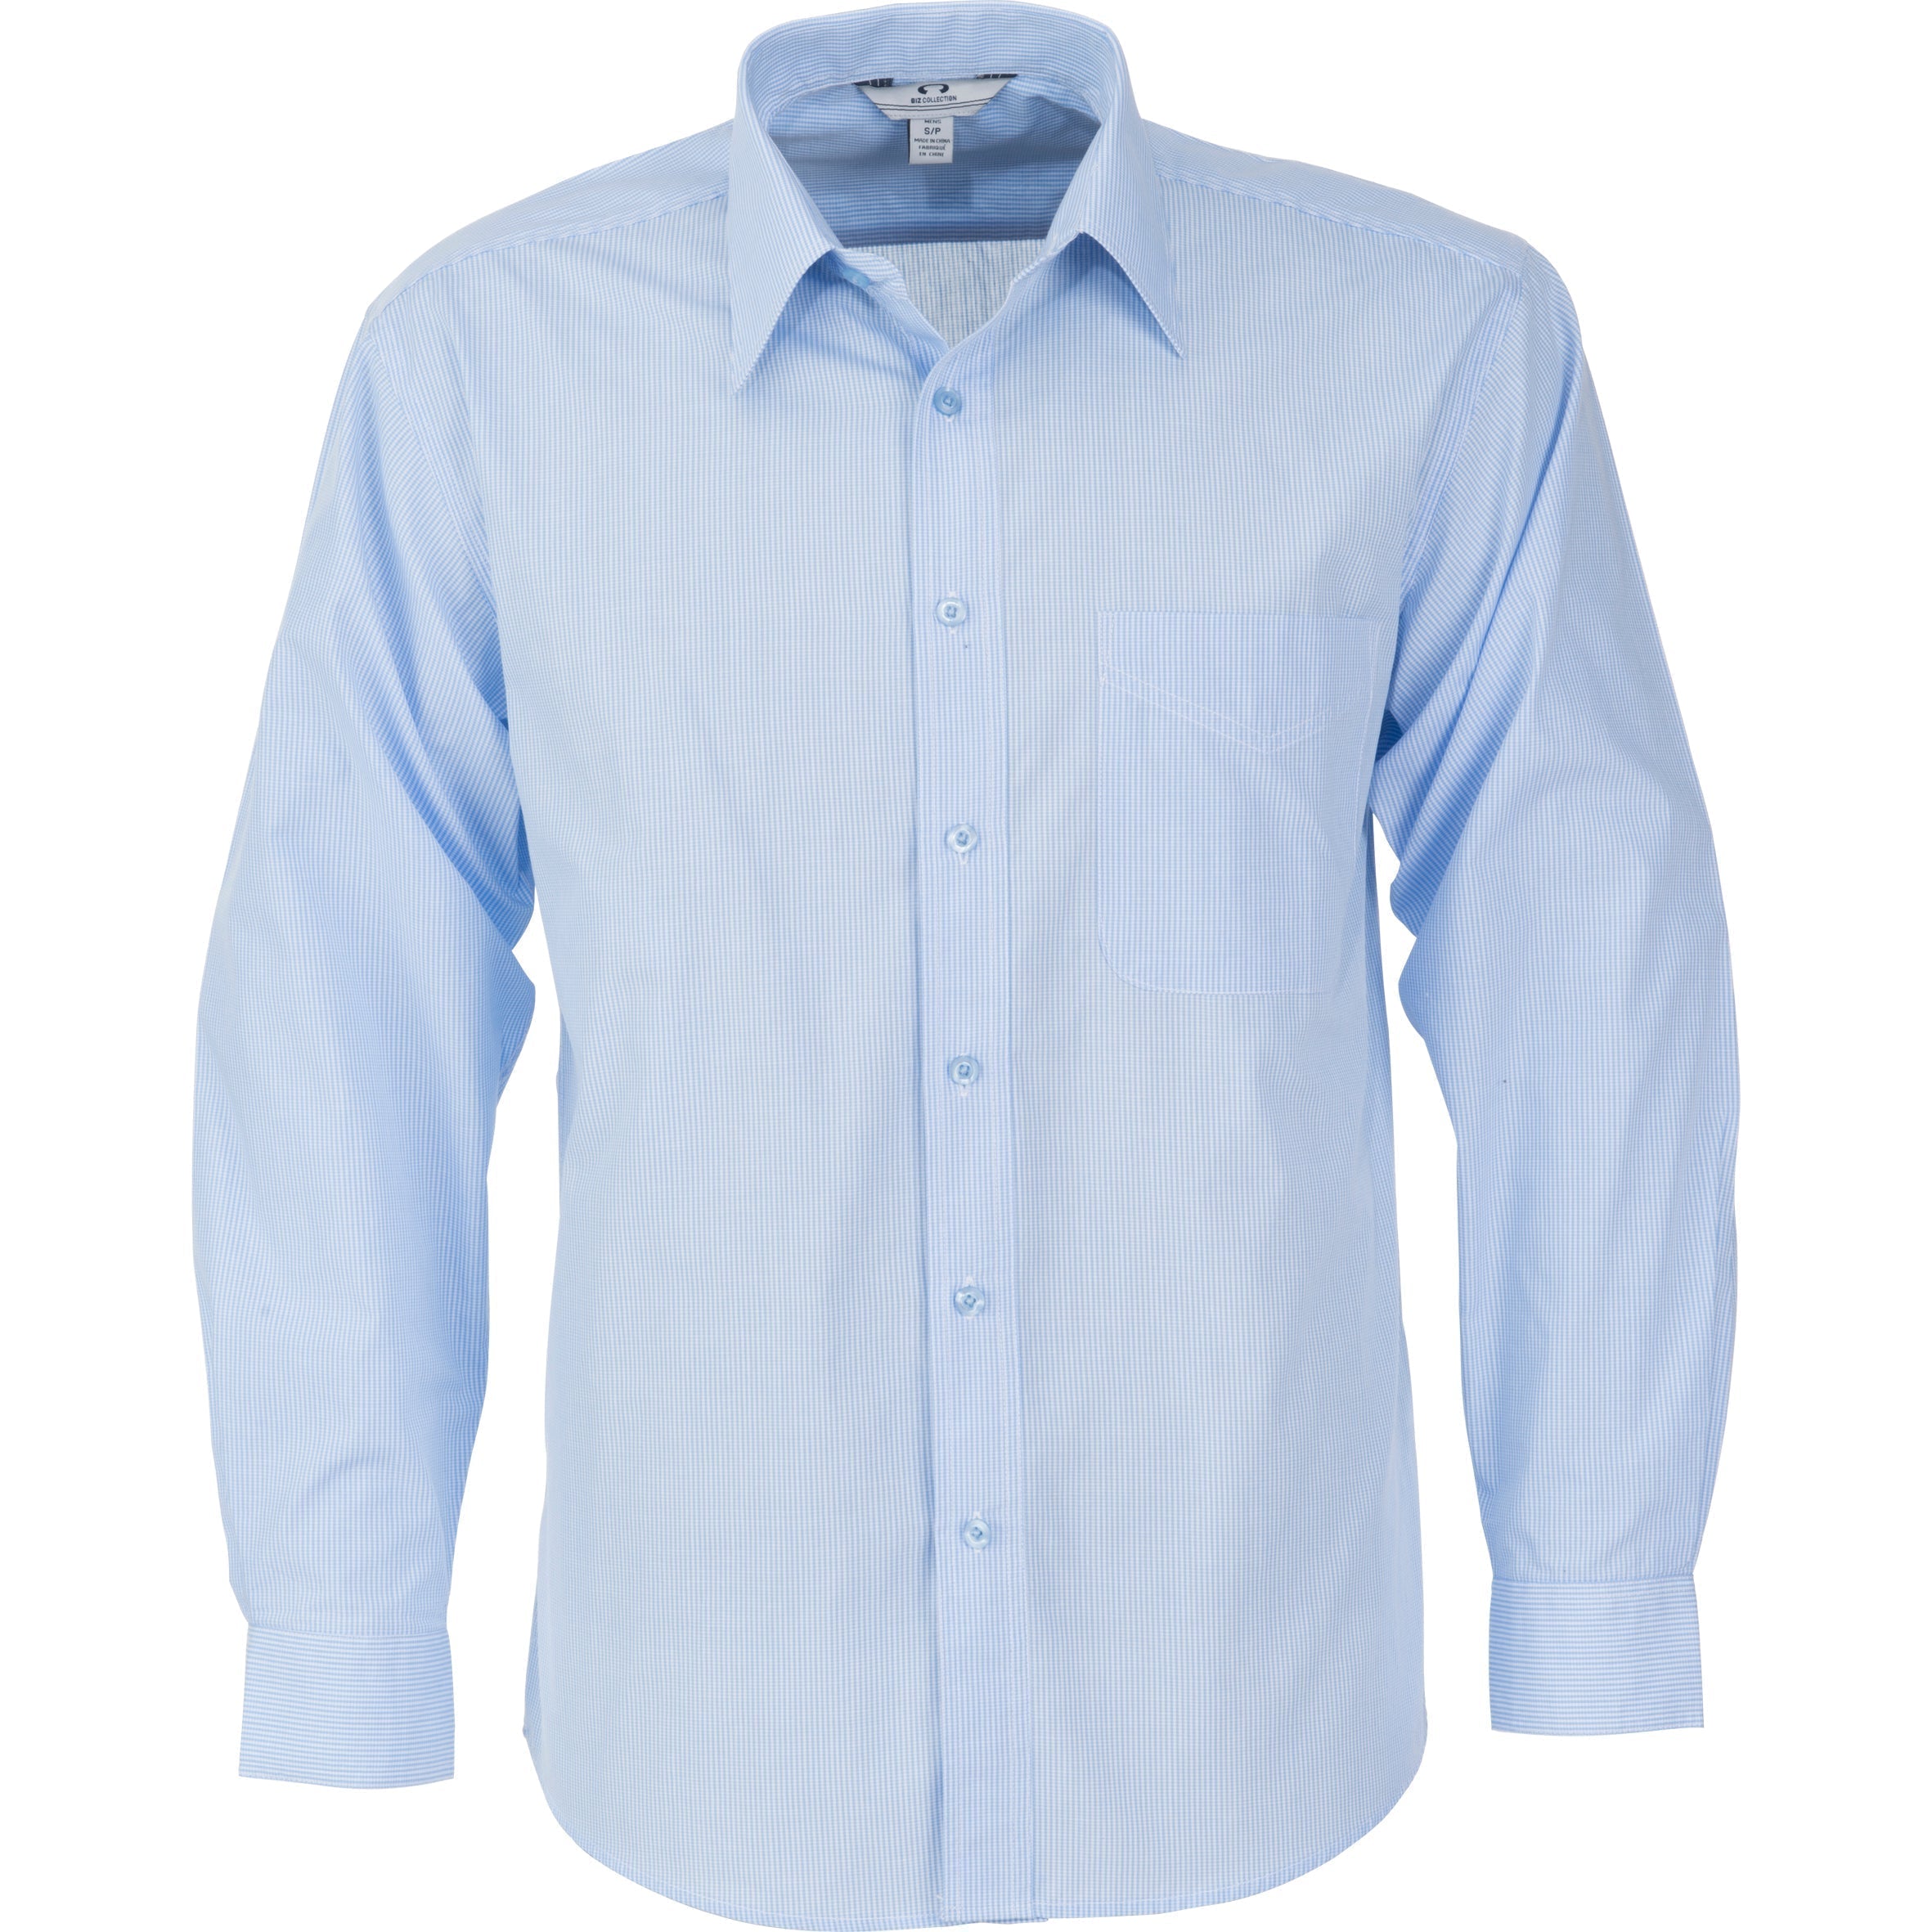 Mens Long Sleeve Micro Check Shirt-Shirts & Tops-2XL-Light Blue-LB